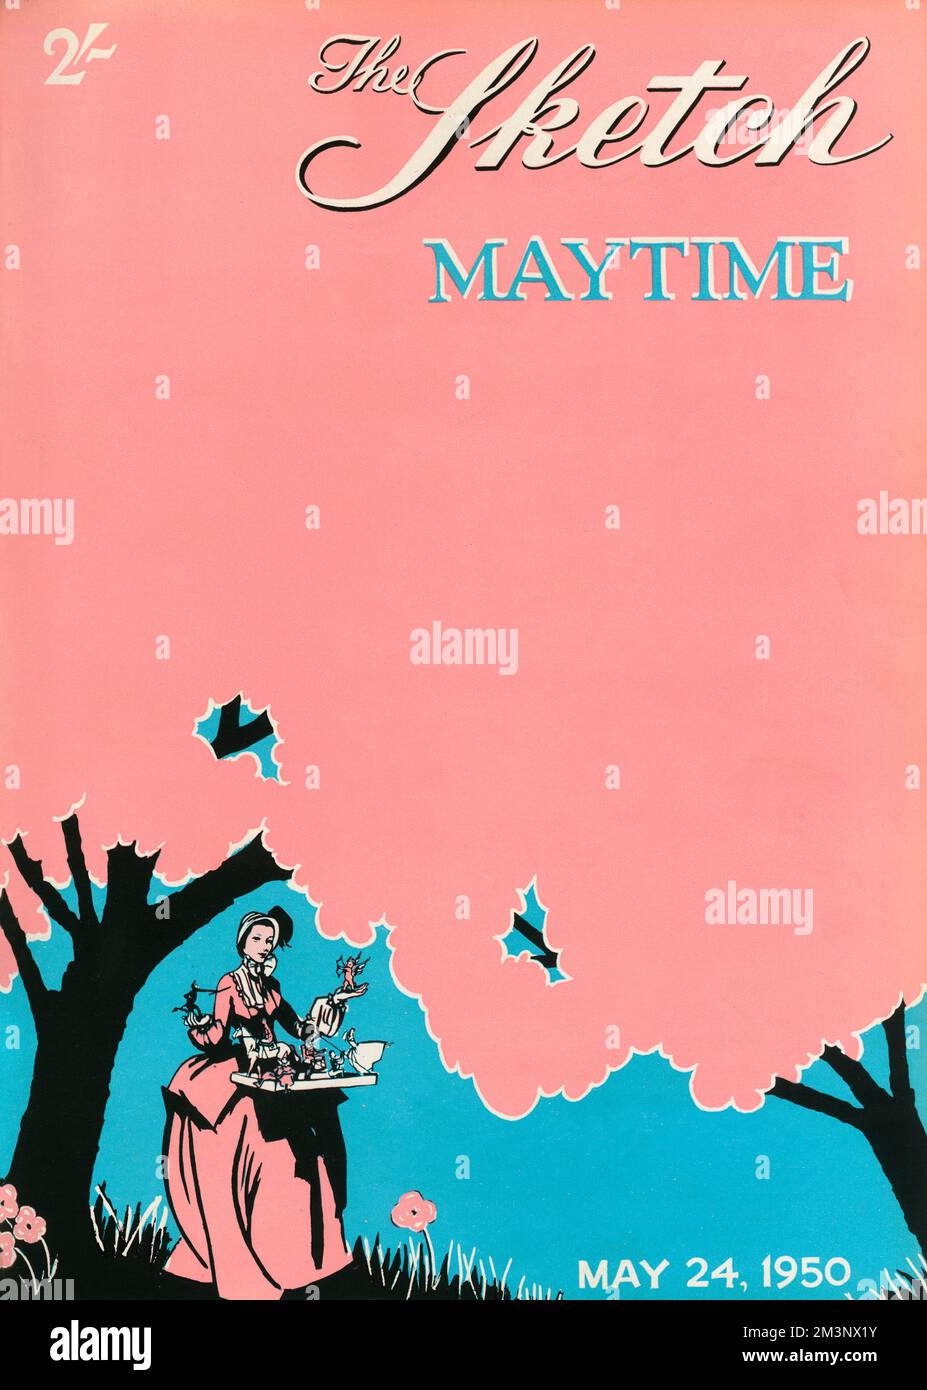 Ein rosafarbenes und federndes Cover des Sketch mit dem Maskottchen des Magazins (eine viktorianische Dame in einer Haube mit Spielzeugladen) inmitten von blühenden Bäumen. Datum: 1950 Stockfoto